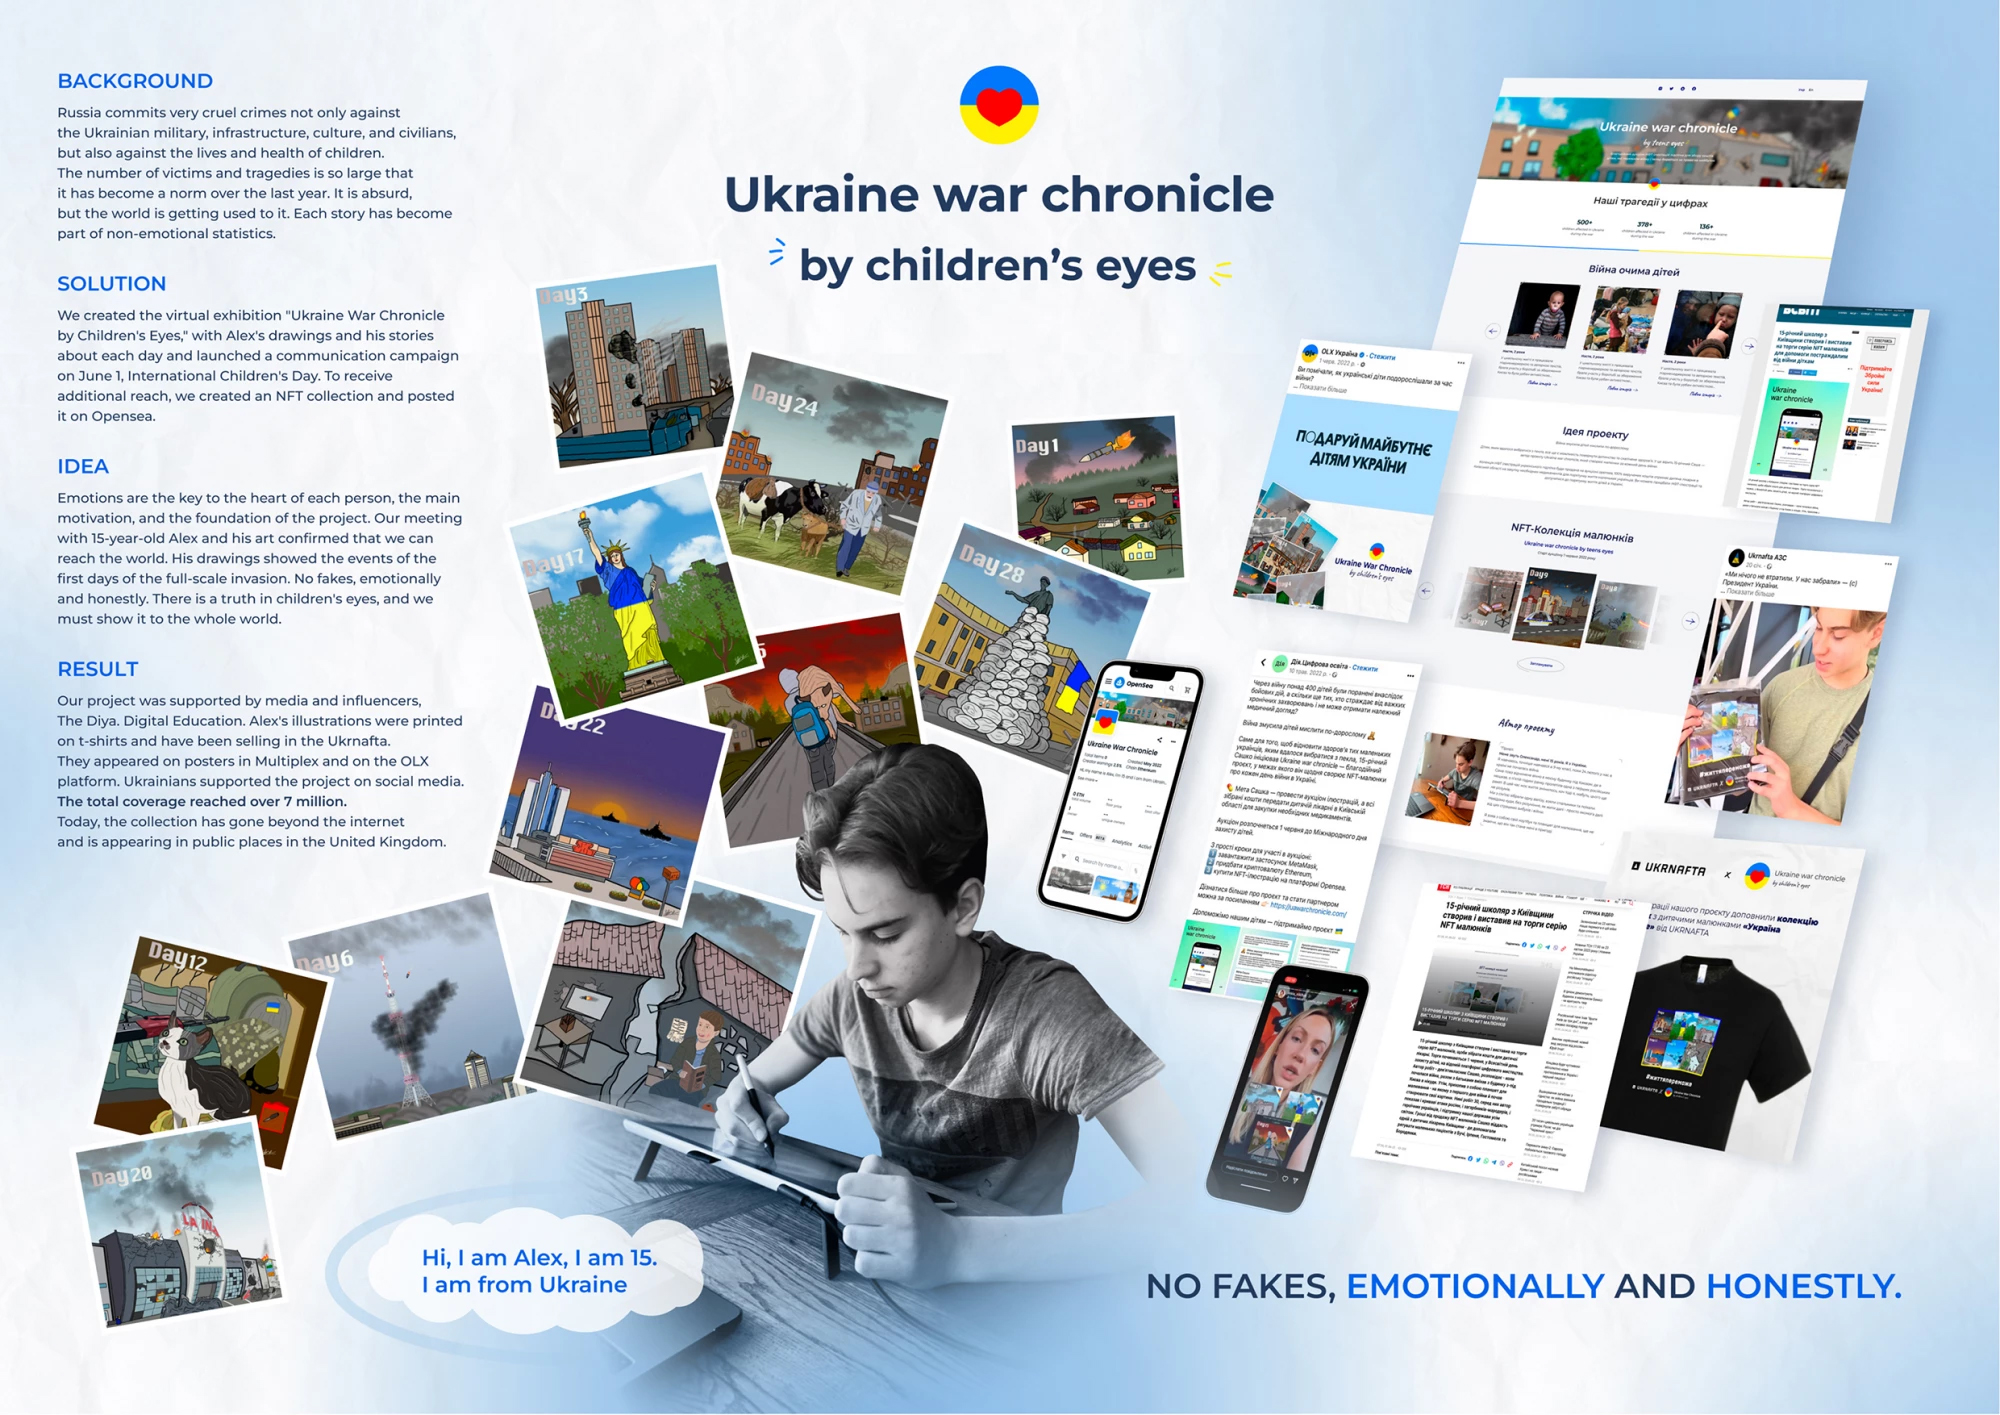 Ukraine War Chronicle by Children’s Eyes